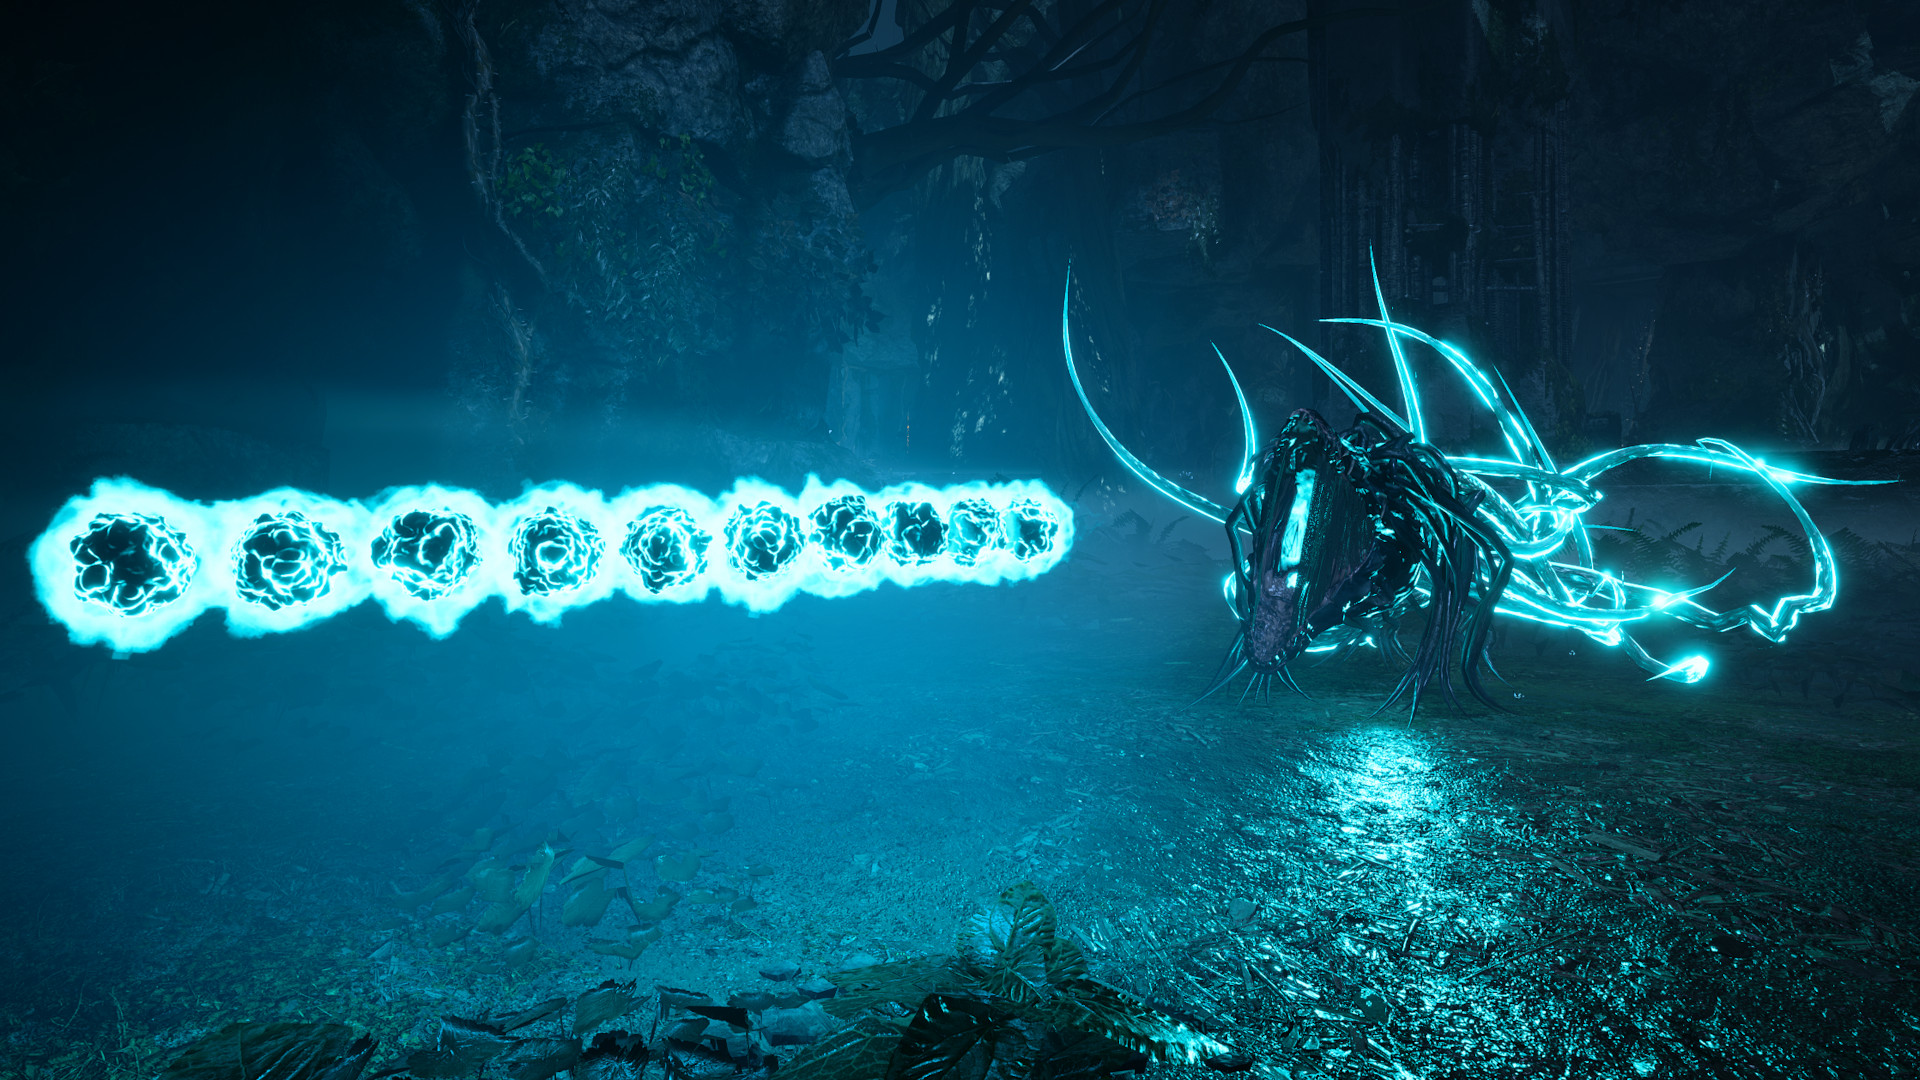 Optimal Returnal settings: Glowing blue enemies shooting blue orbs